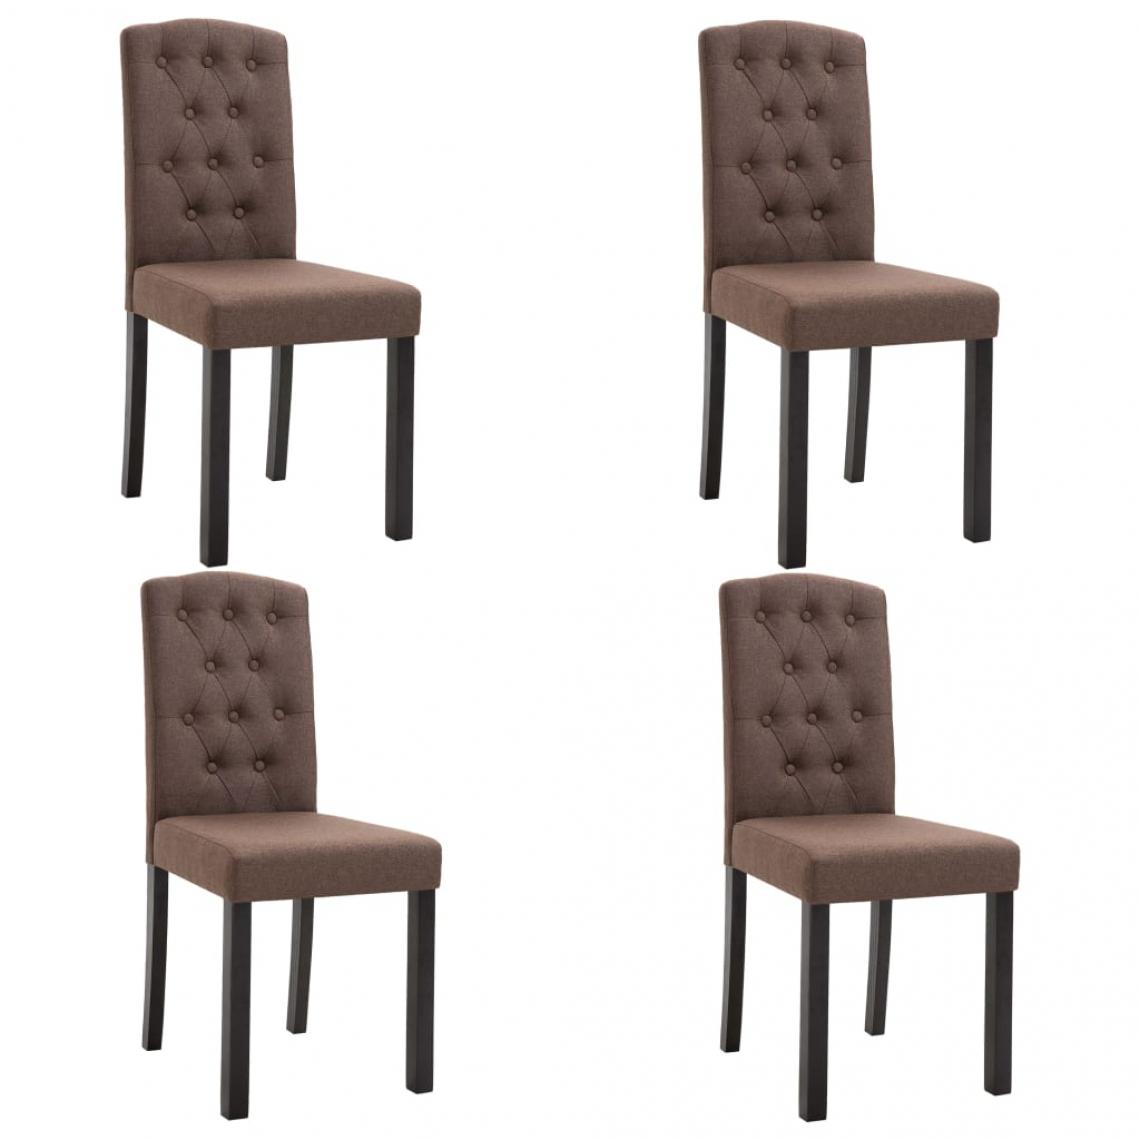 Decoshop26 - Lot de 4 chaises de salle à manger cuisine design moderne tissu marron CDS021739 - Chaises